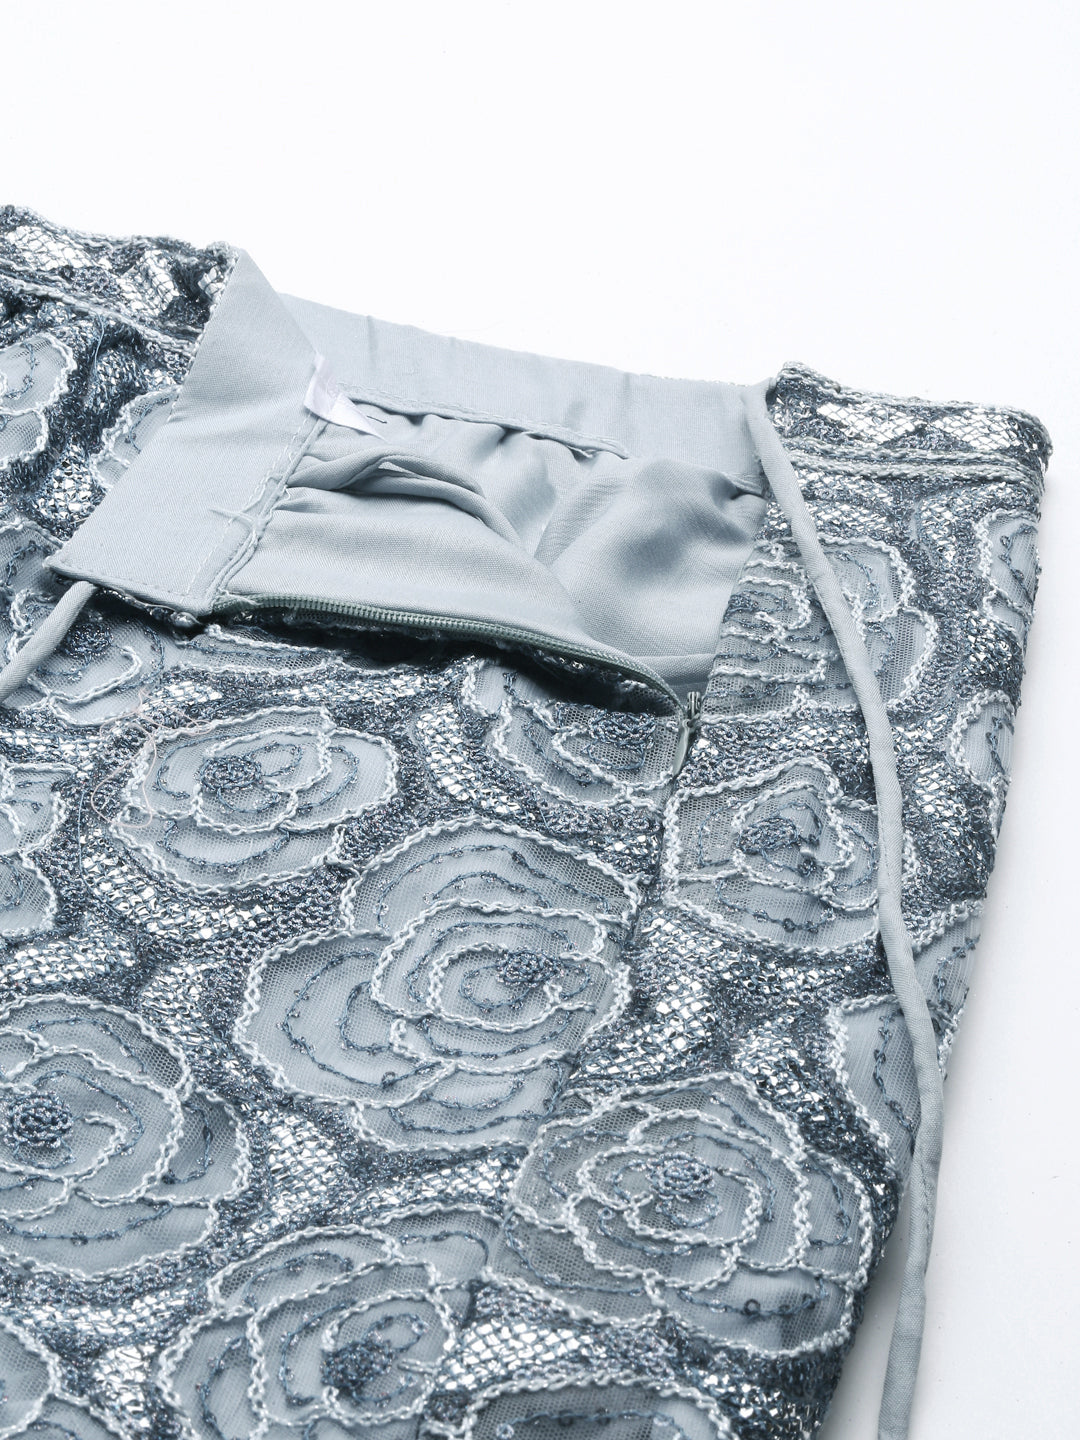 Women's Grey Net Gotapatti Work Fully-Stitched Lehenga & Stitched Blouse, Dupatta - Royal Dwells